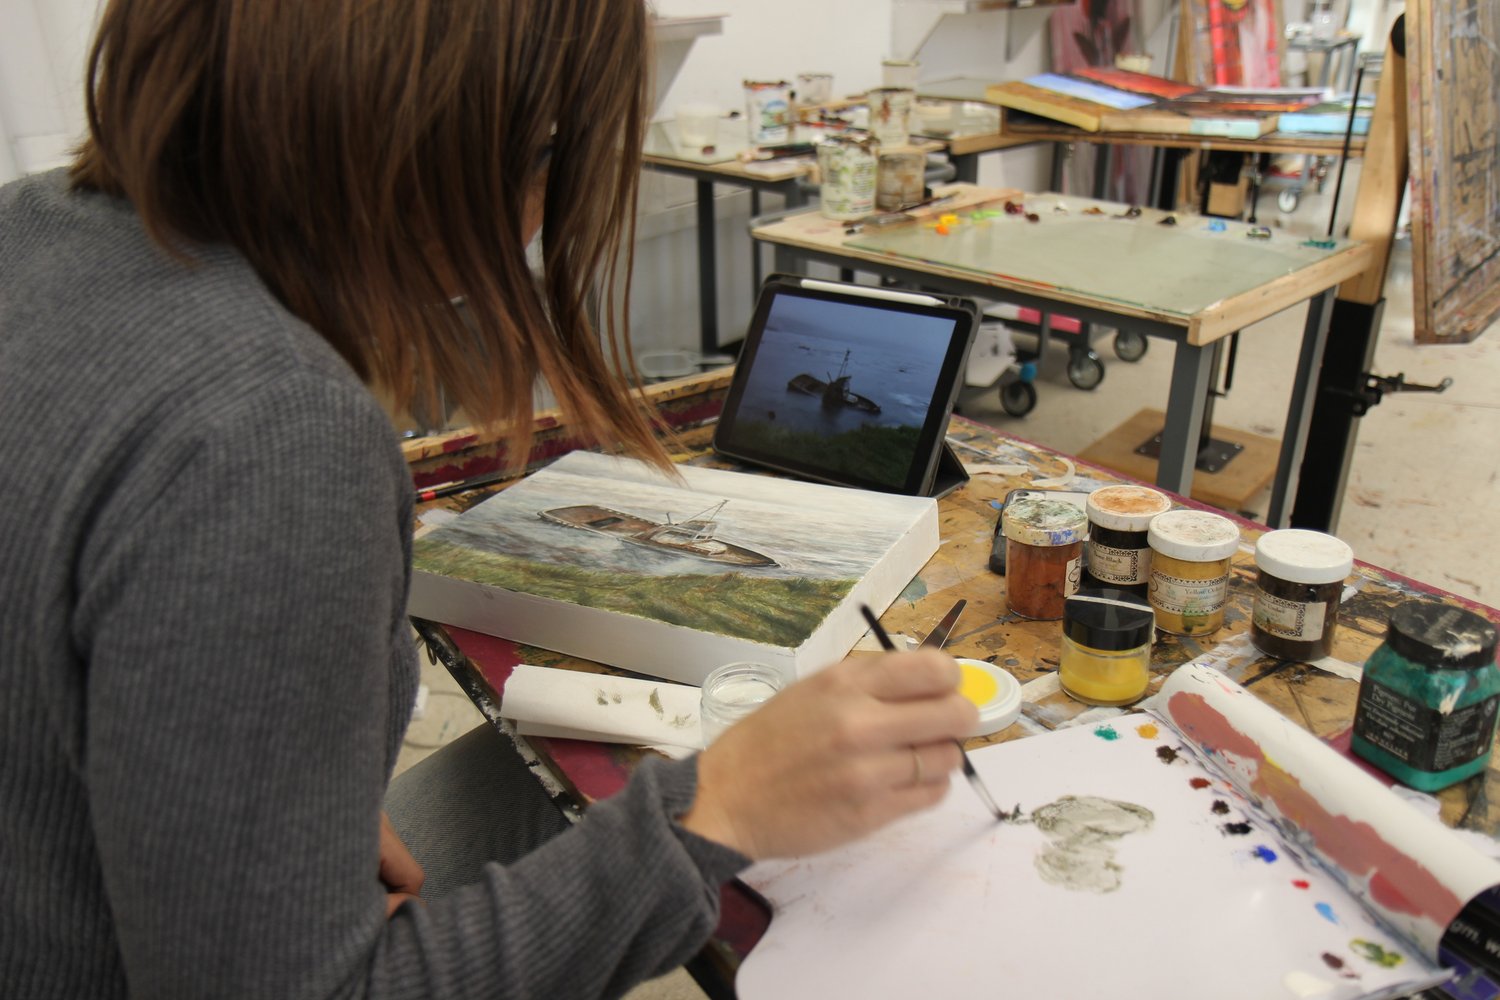 绘画三课程。学生用课堂上创作的蛋彩画画一幅风景画。